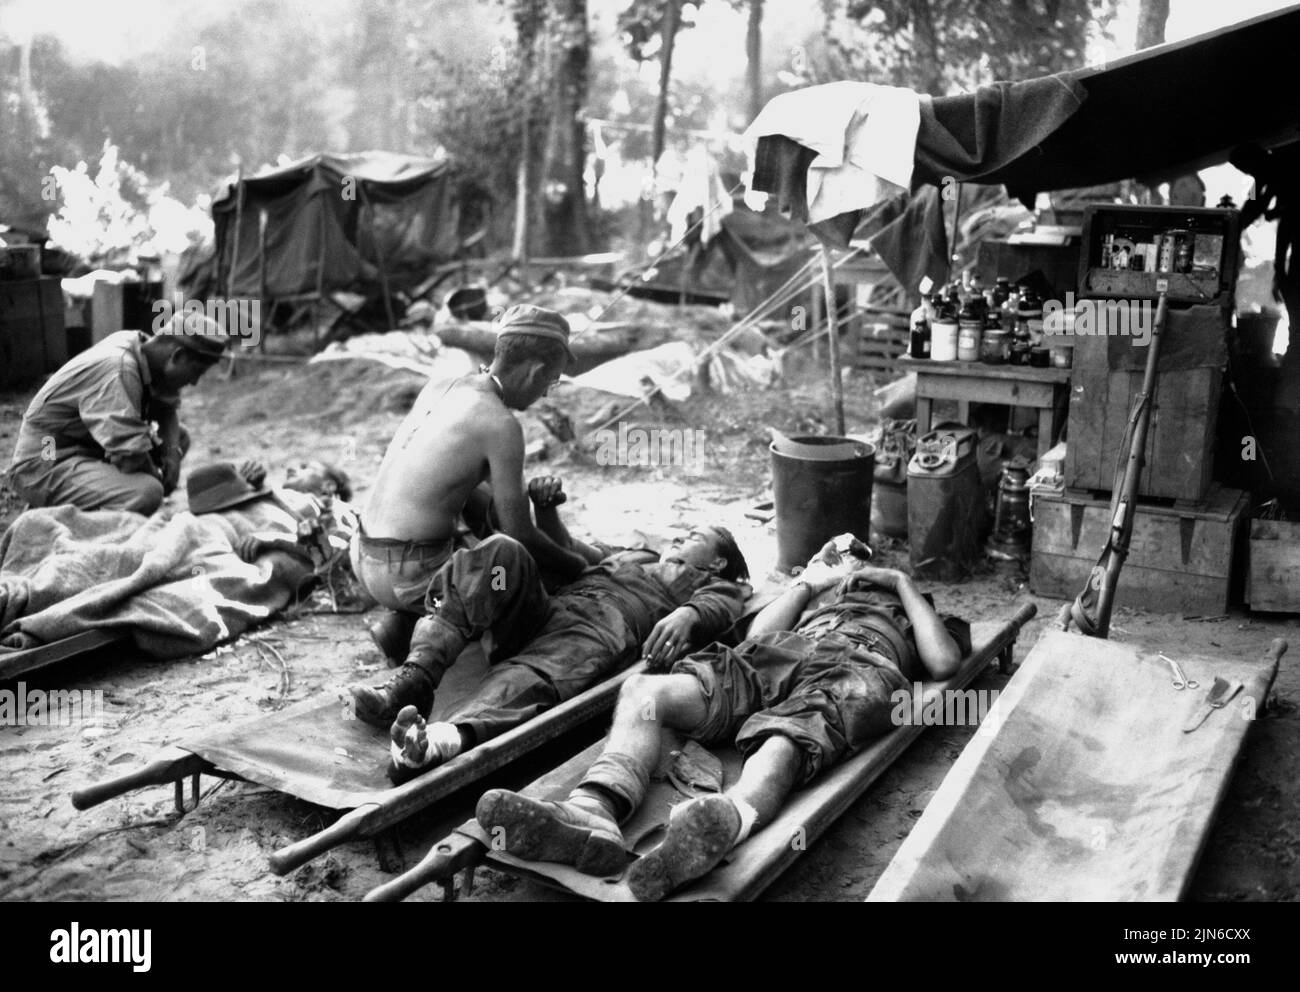 PINWE, BIRMANIA - 12 novembre 1944 - i medici dell'esercito degli Stati Uniti trattano le vittime ad un'unità chirurgica portatile americana (il precursore del M*A*S*H*) durante il 36 Foto Stock